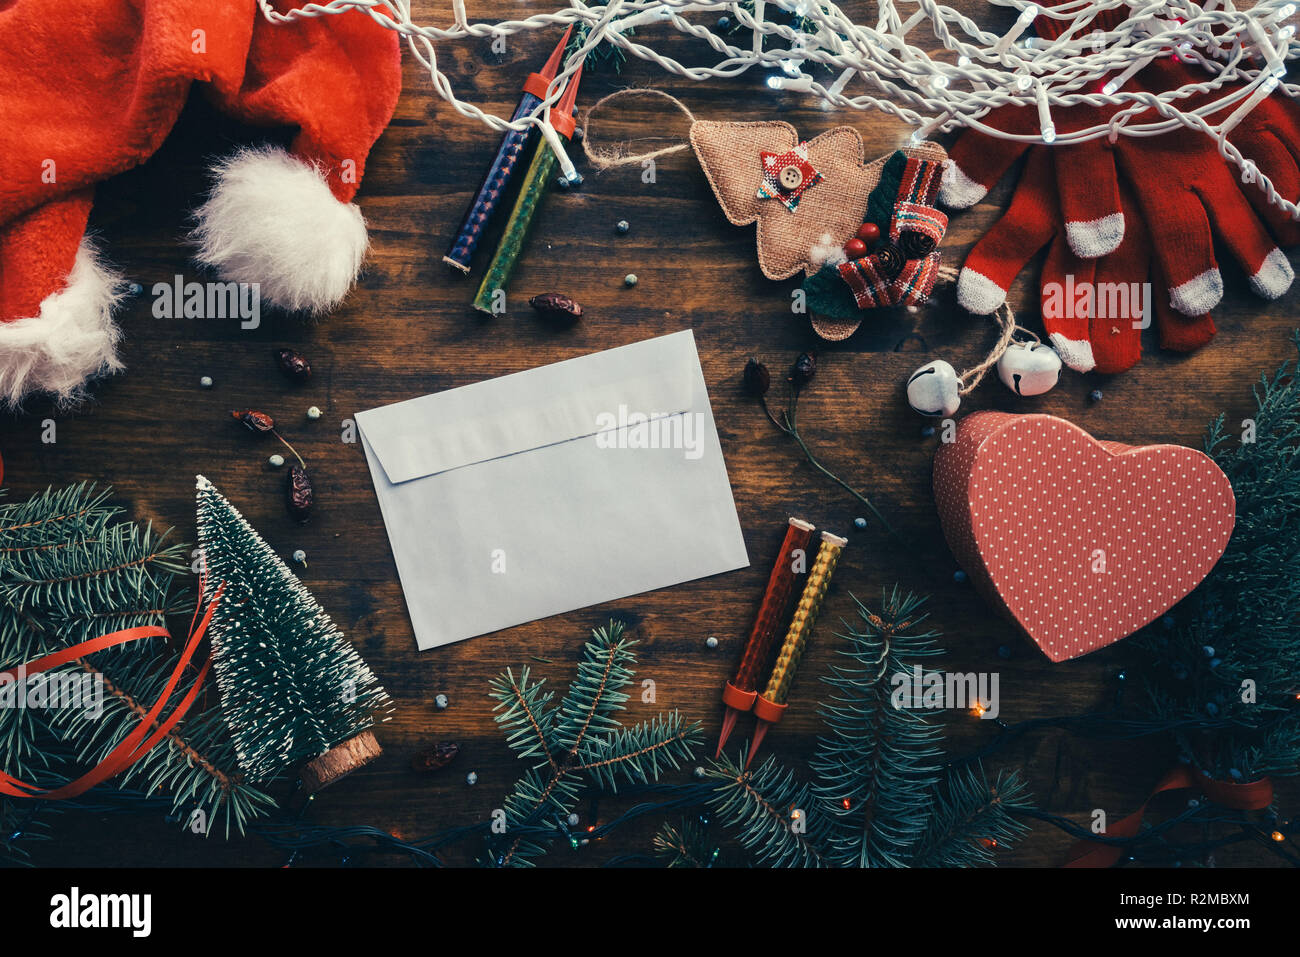 Écrire une lettre au Père Noël pour Noël, enveloppe vide sur la table de fête parmi les décorations de Noël Banque D'Images